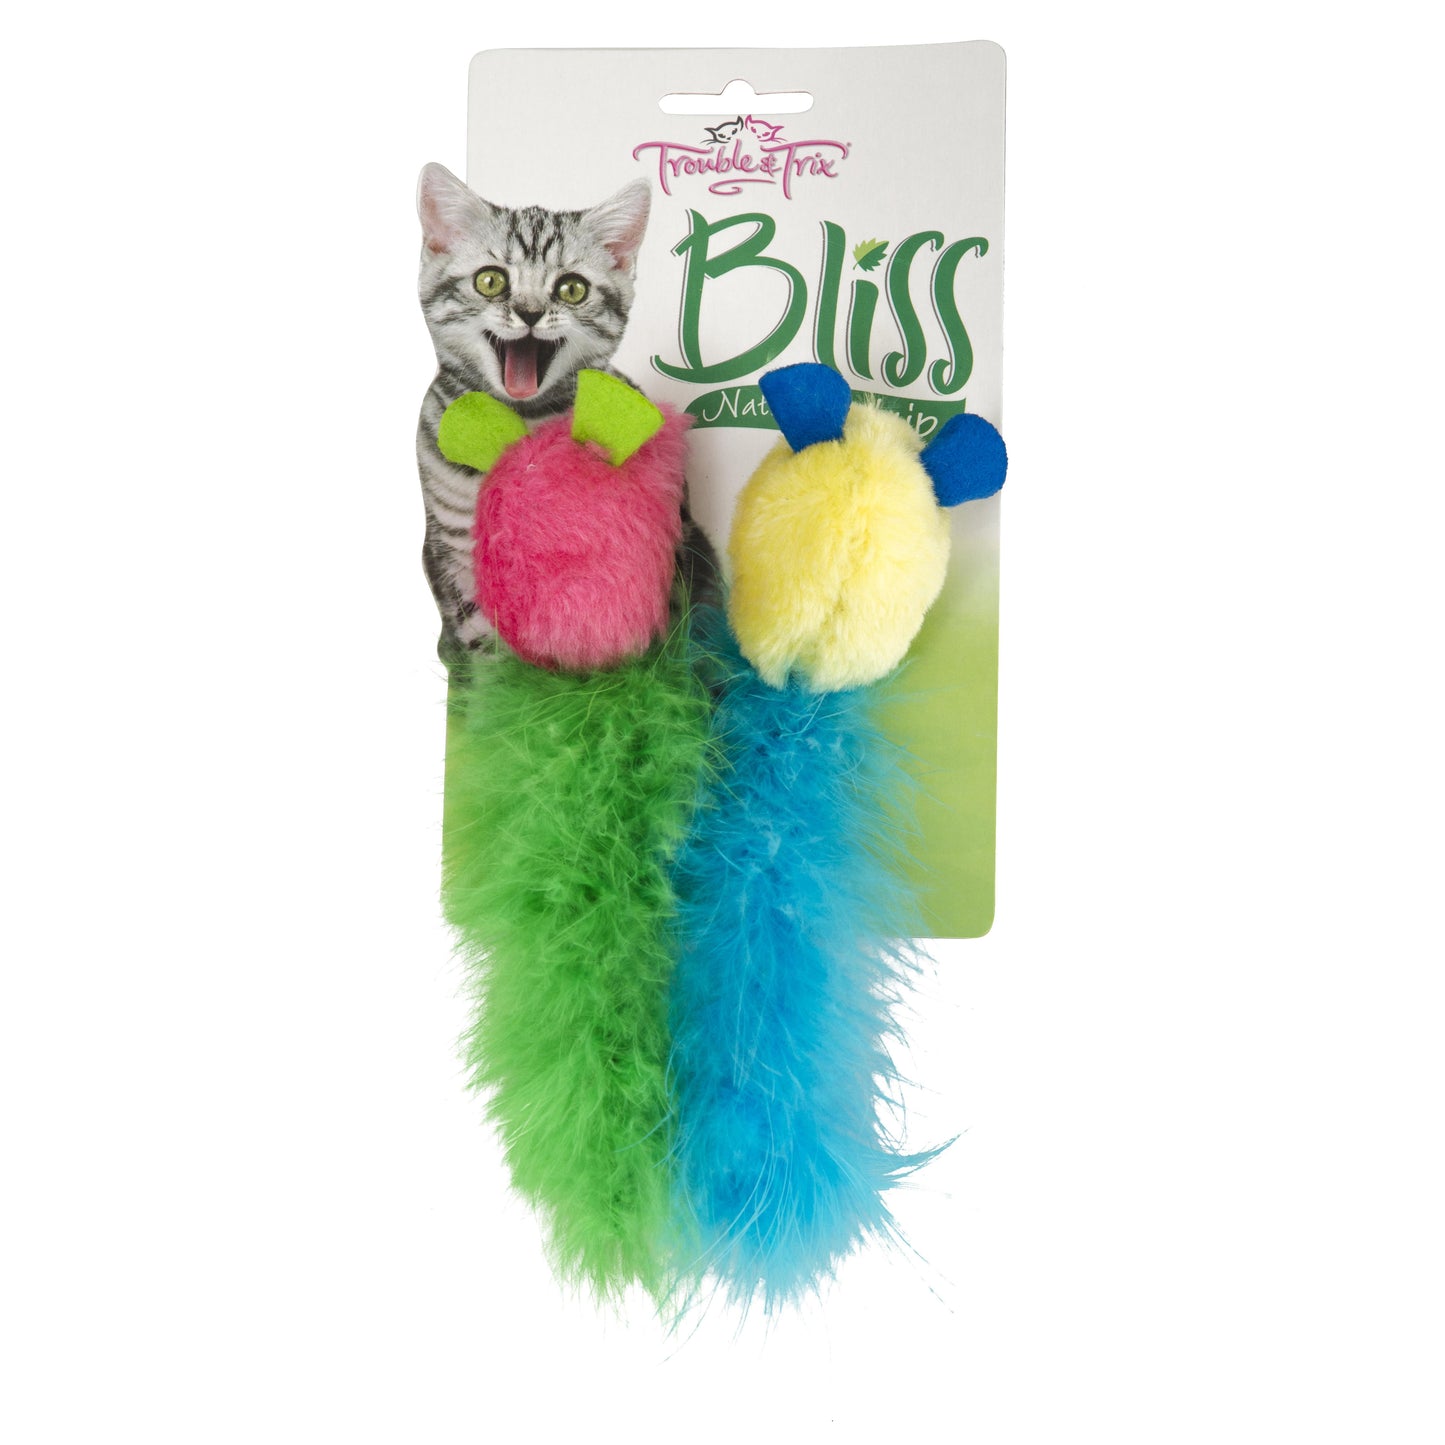 Trouble & Trix Bliss Tweet Mice Cat Toy